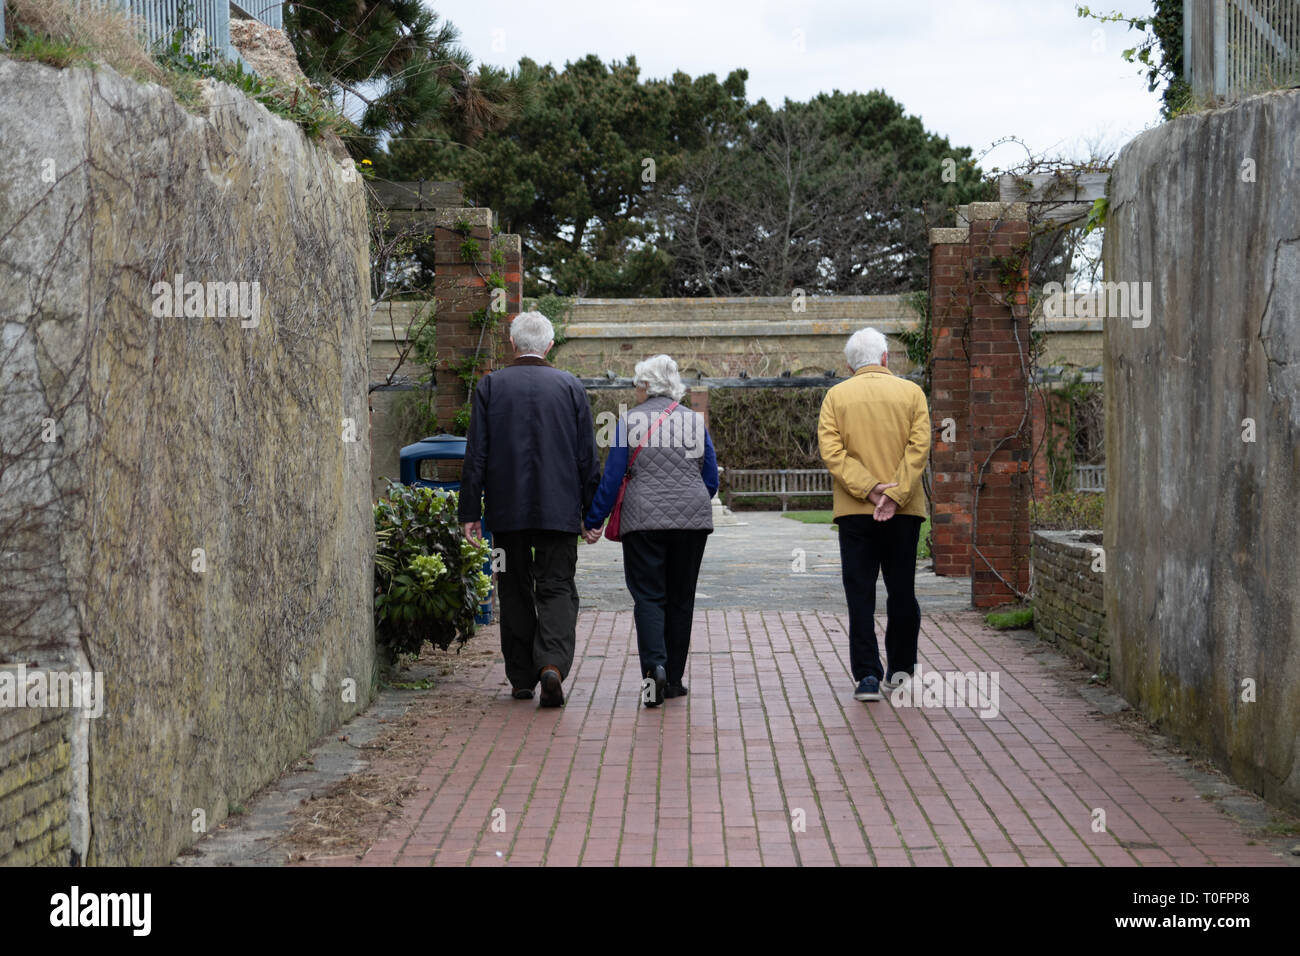 Le persone anziane a piedi in entrata di un giardino pubblico, di cui due sono tenendo le mani Foto Stock